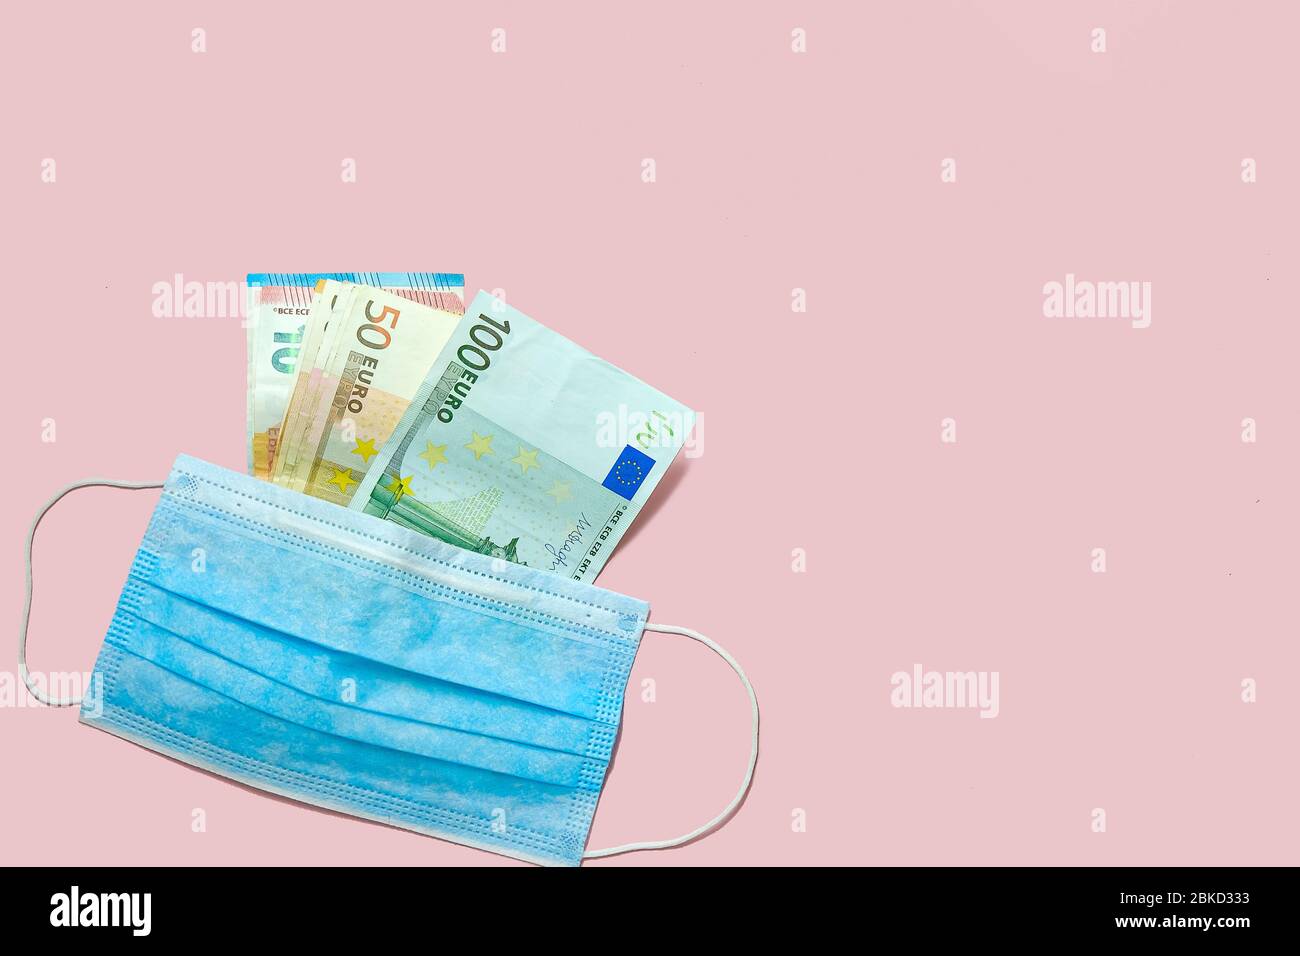 Quarantäne Geschäft.Euro-Banknoten und medizinische Maske auf einem rosa Hintergrund. Konzept der Finanzkrise während der Coronavirus-Pandemie. Stockfoto